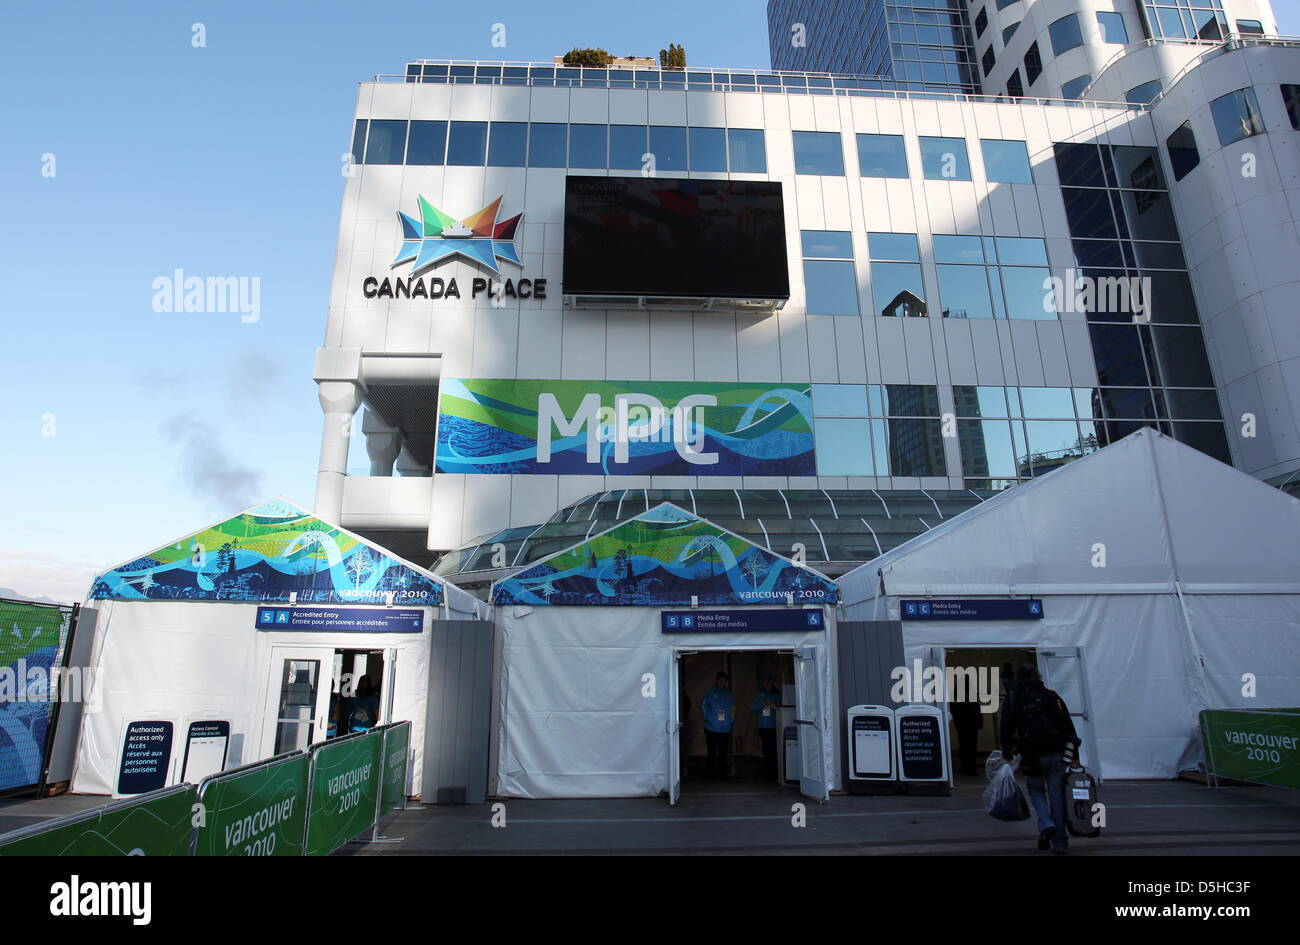 Zelte, in denen sich die Journalisten einer Sicherheitskontrolle unterziehen muessen, stehen am Dienstag (09.02.2010) vor dem Main Press Centre (MPC) in Vancouver, Kanada. Foto: Daniel Karmann dpa Foto Stock